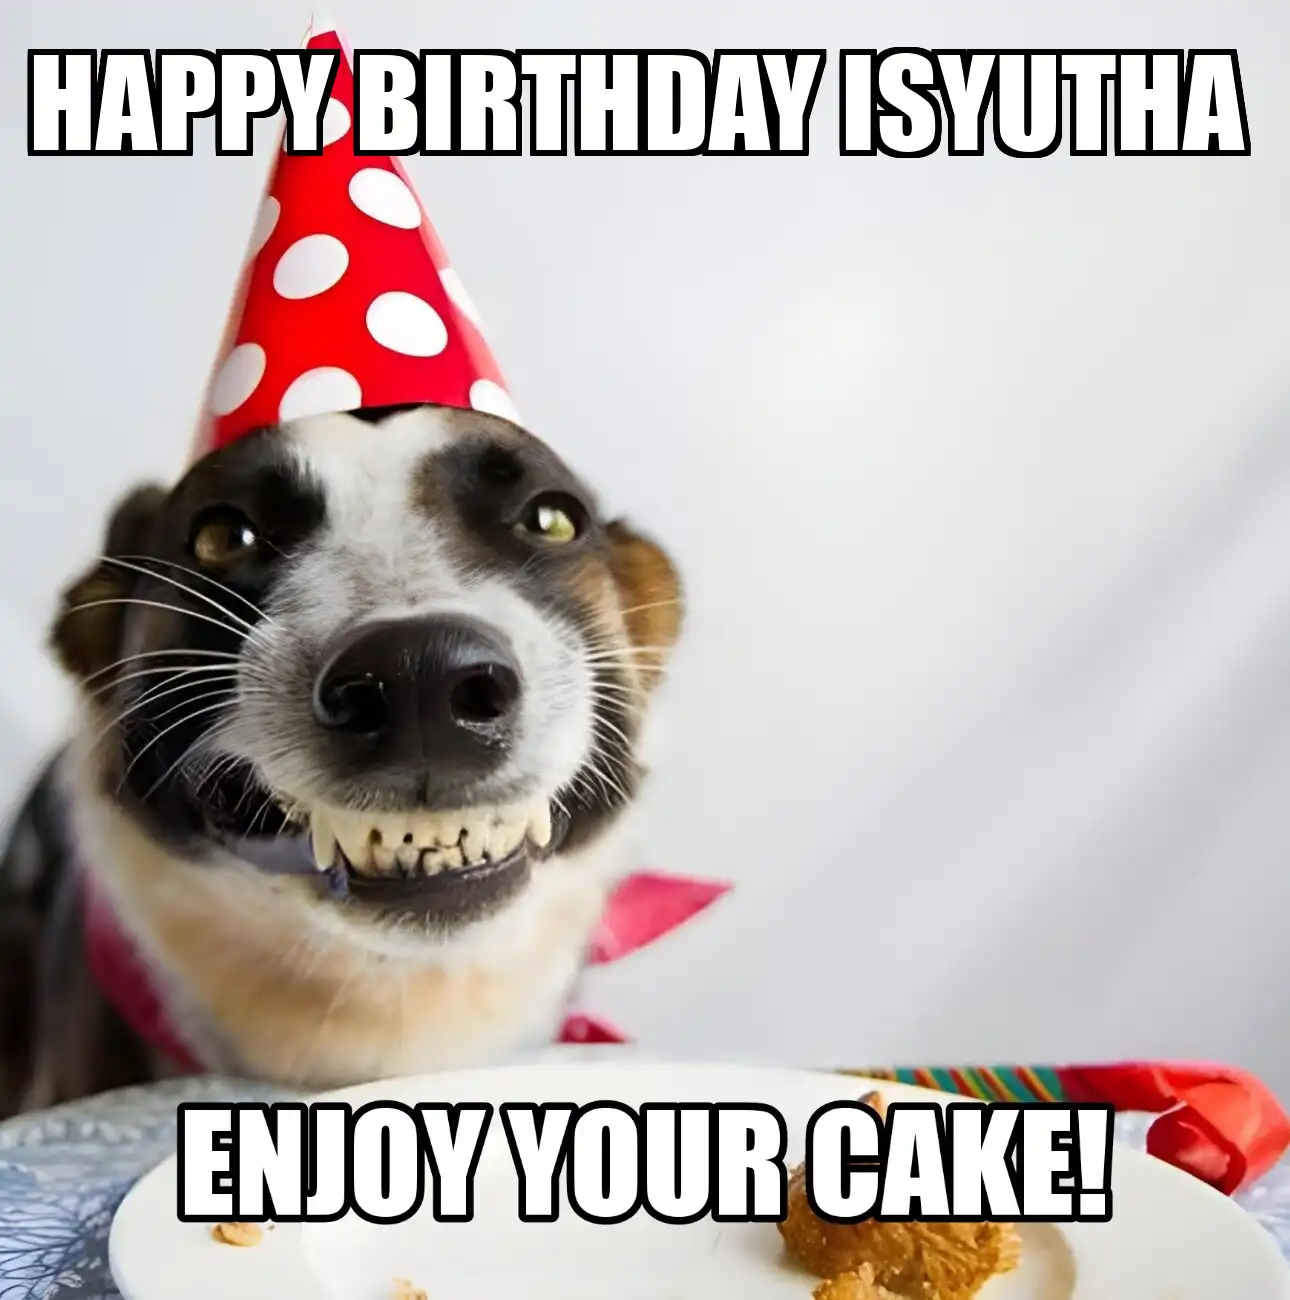 Happy Birthday Isyutha Enjoy Your Cake Dog Meme